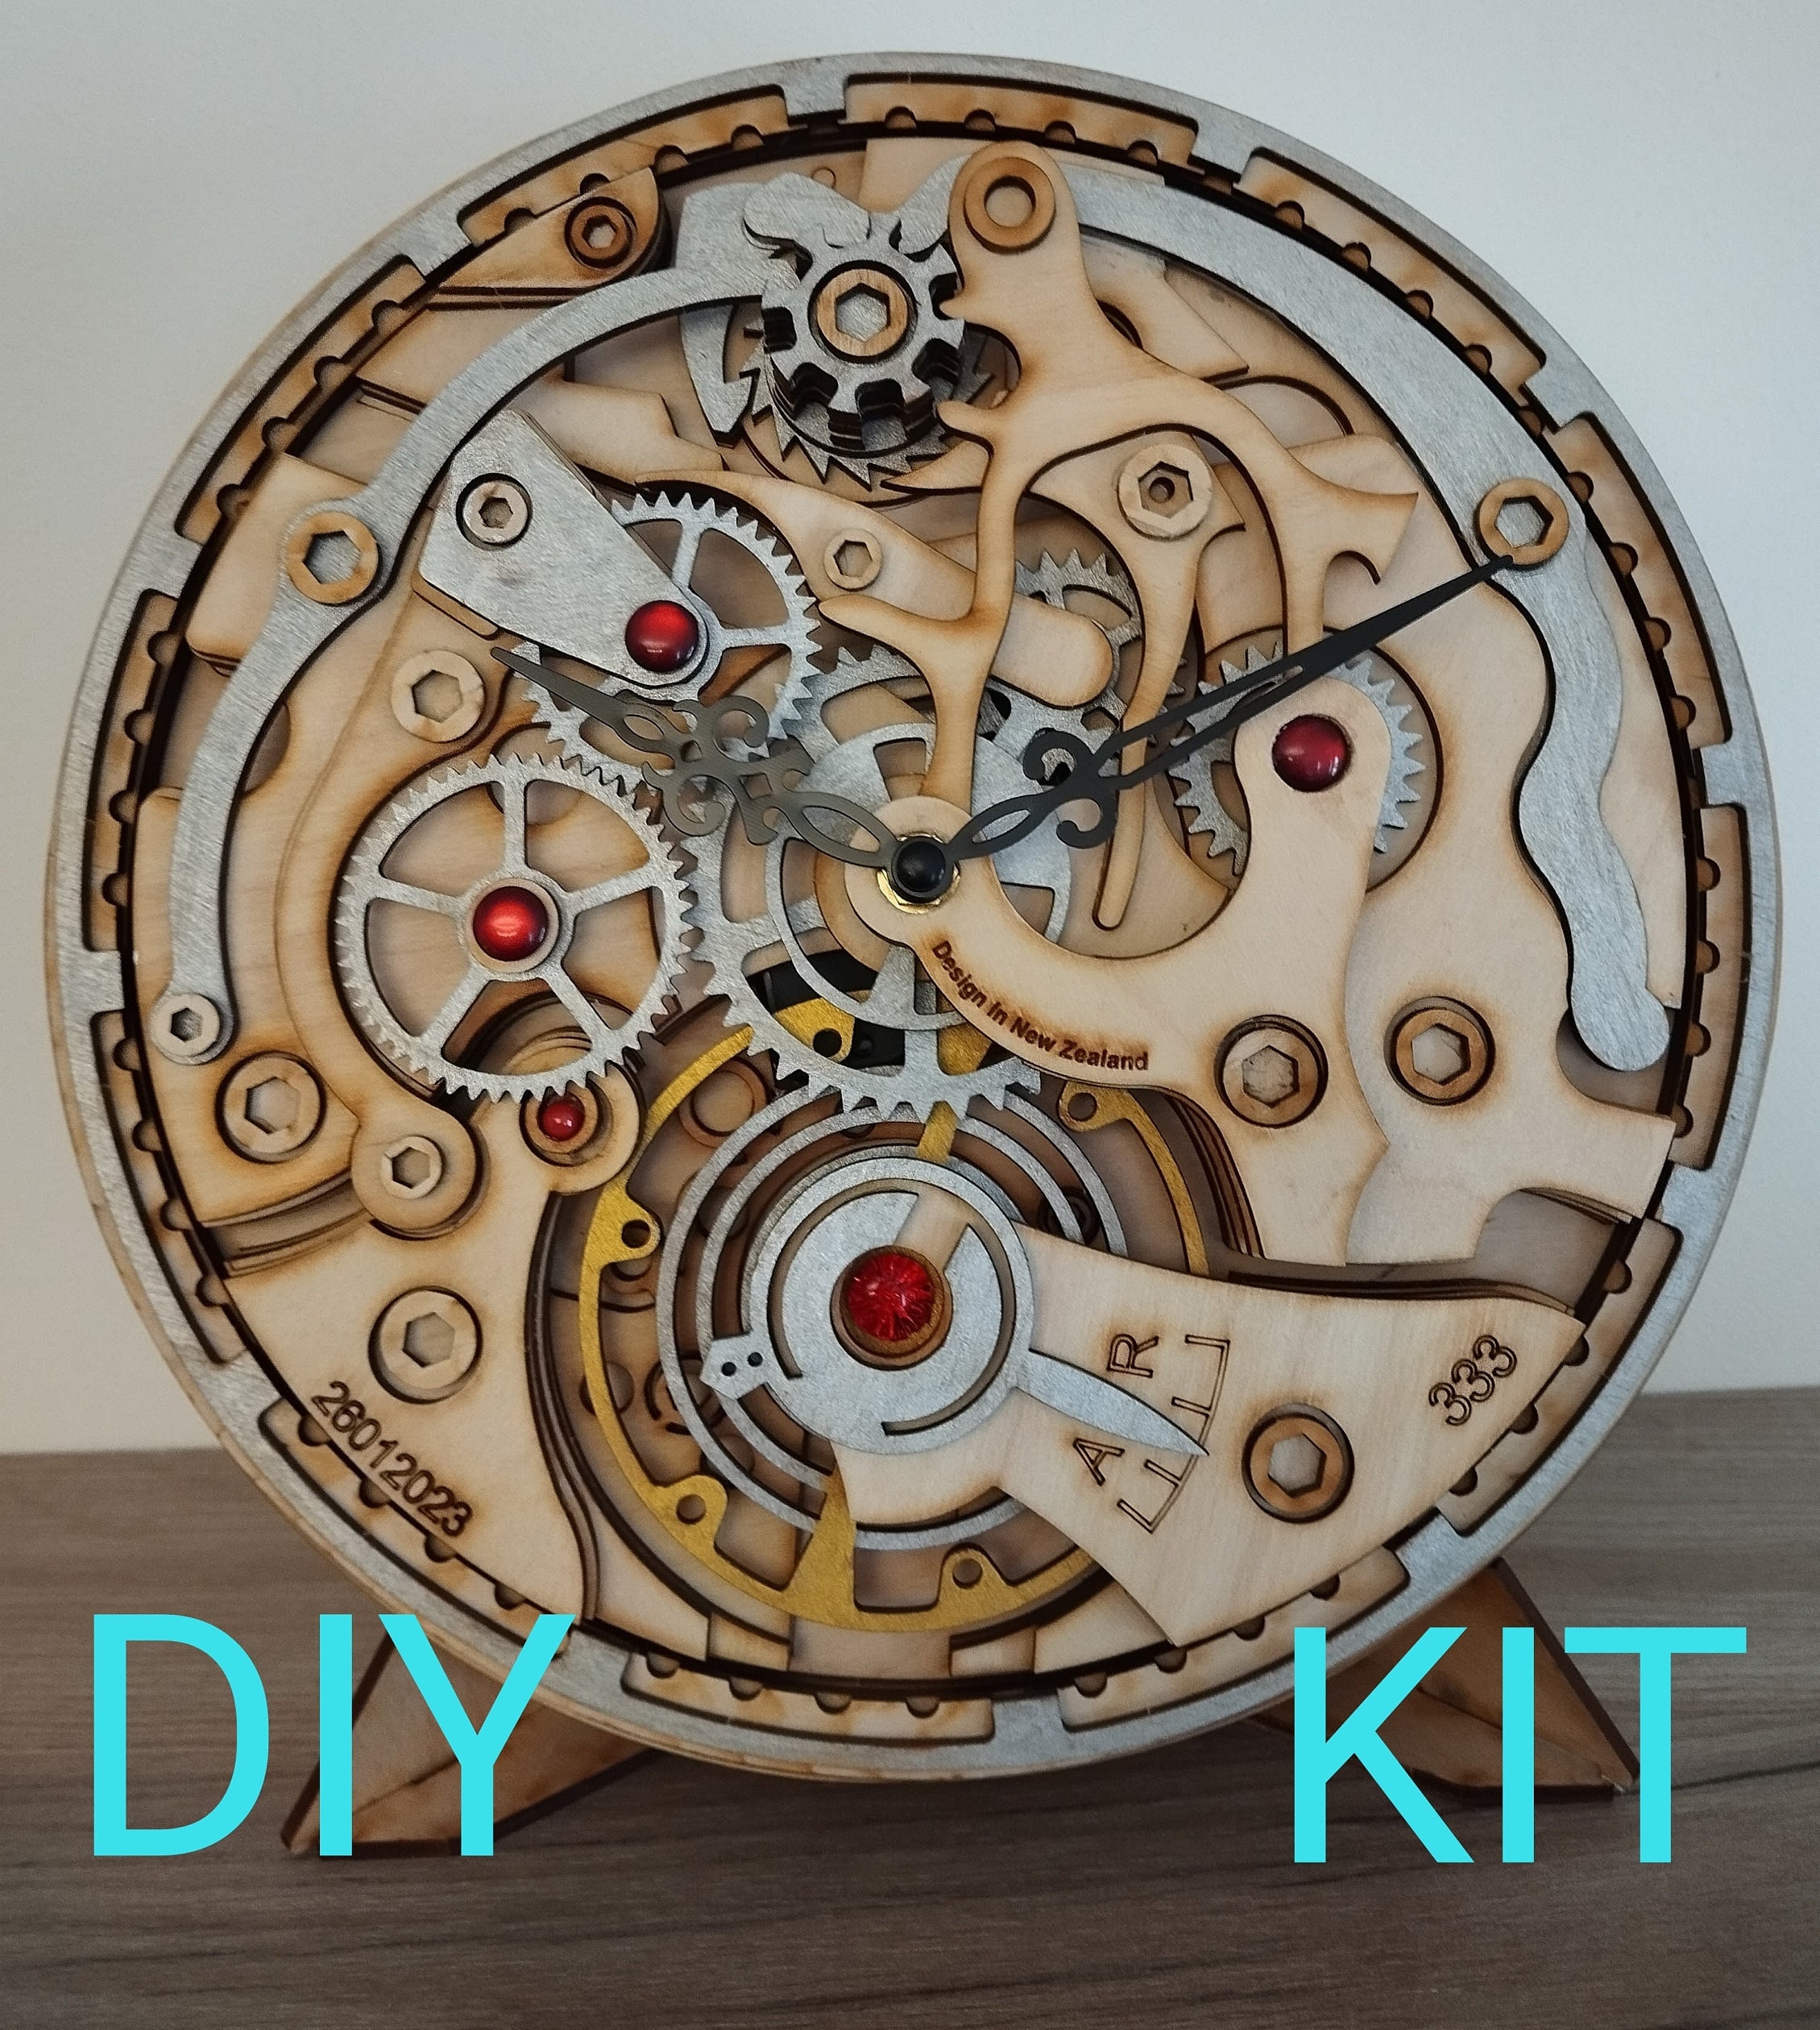 1 Ensemble De Kit De Réparation D'horloge À Quartz DIY, 22mm